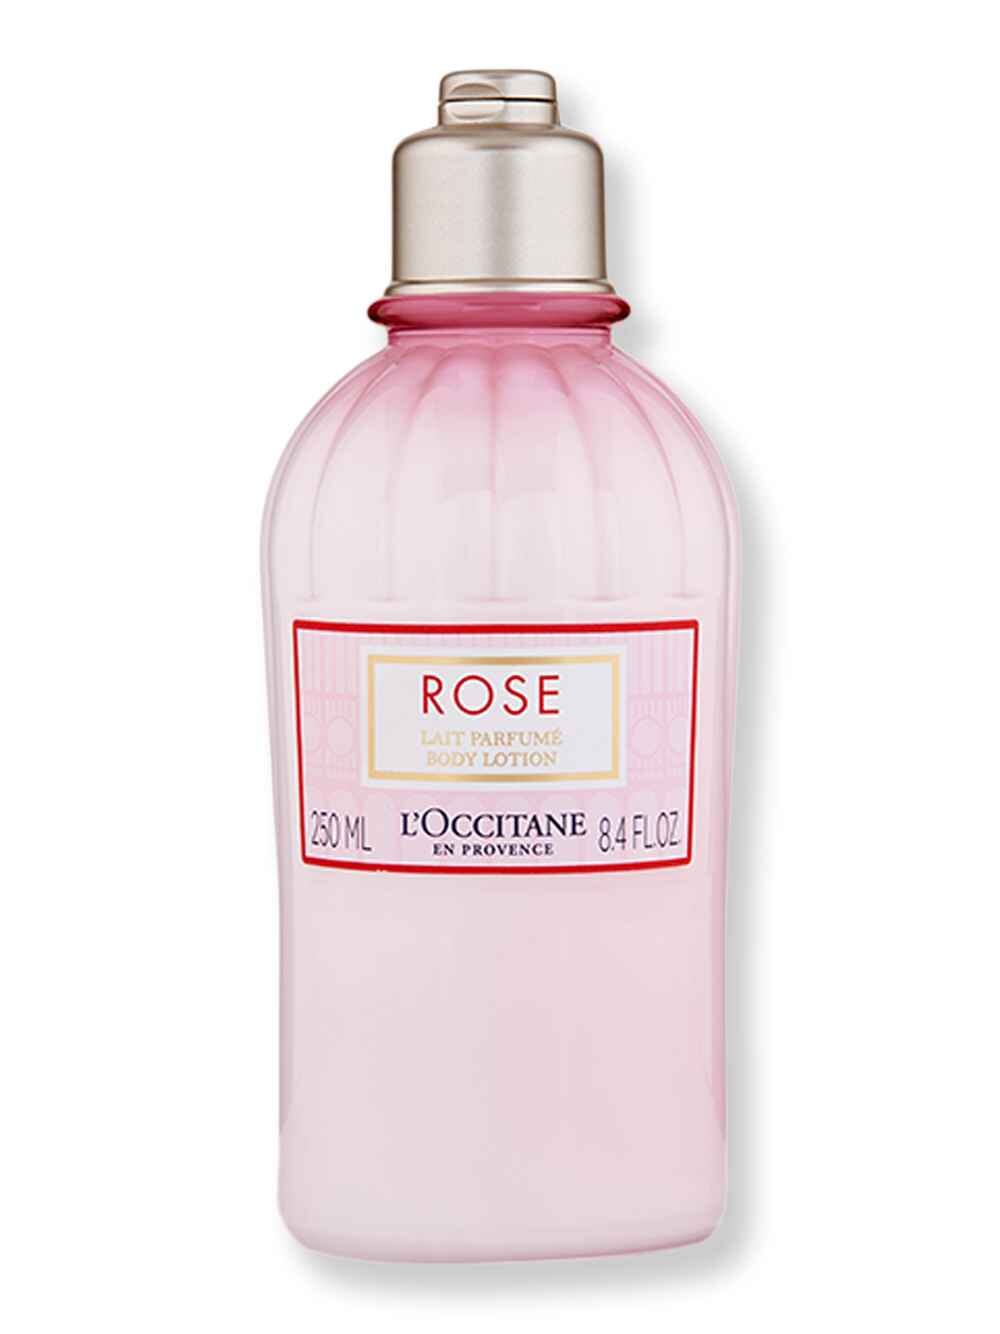 L'Occitane L'Occitane Rose Body Lotion 8.4 fl oz Body Lotions & Oils 